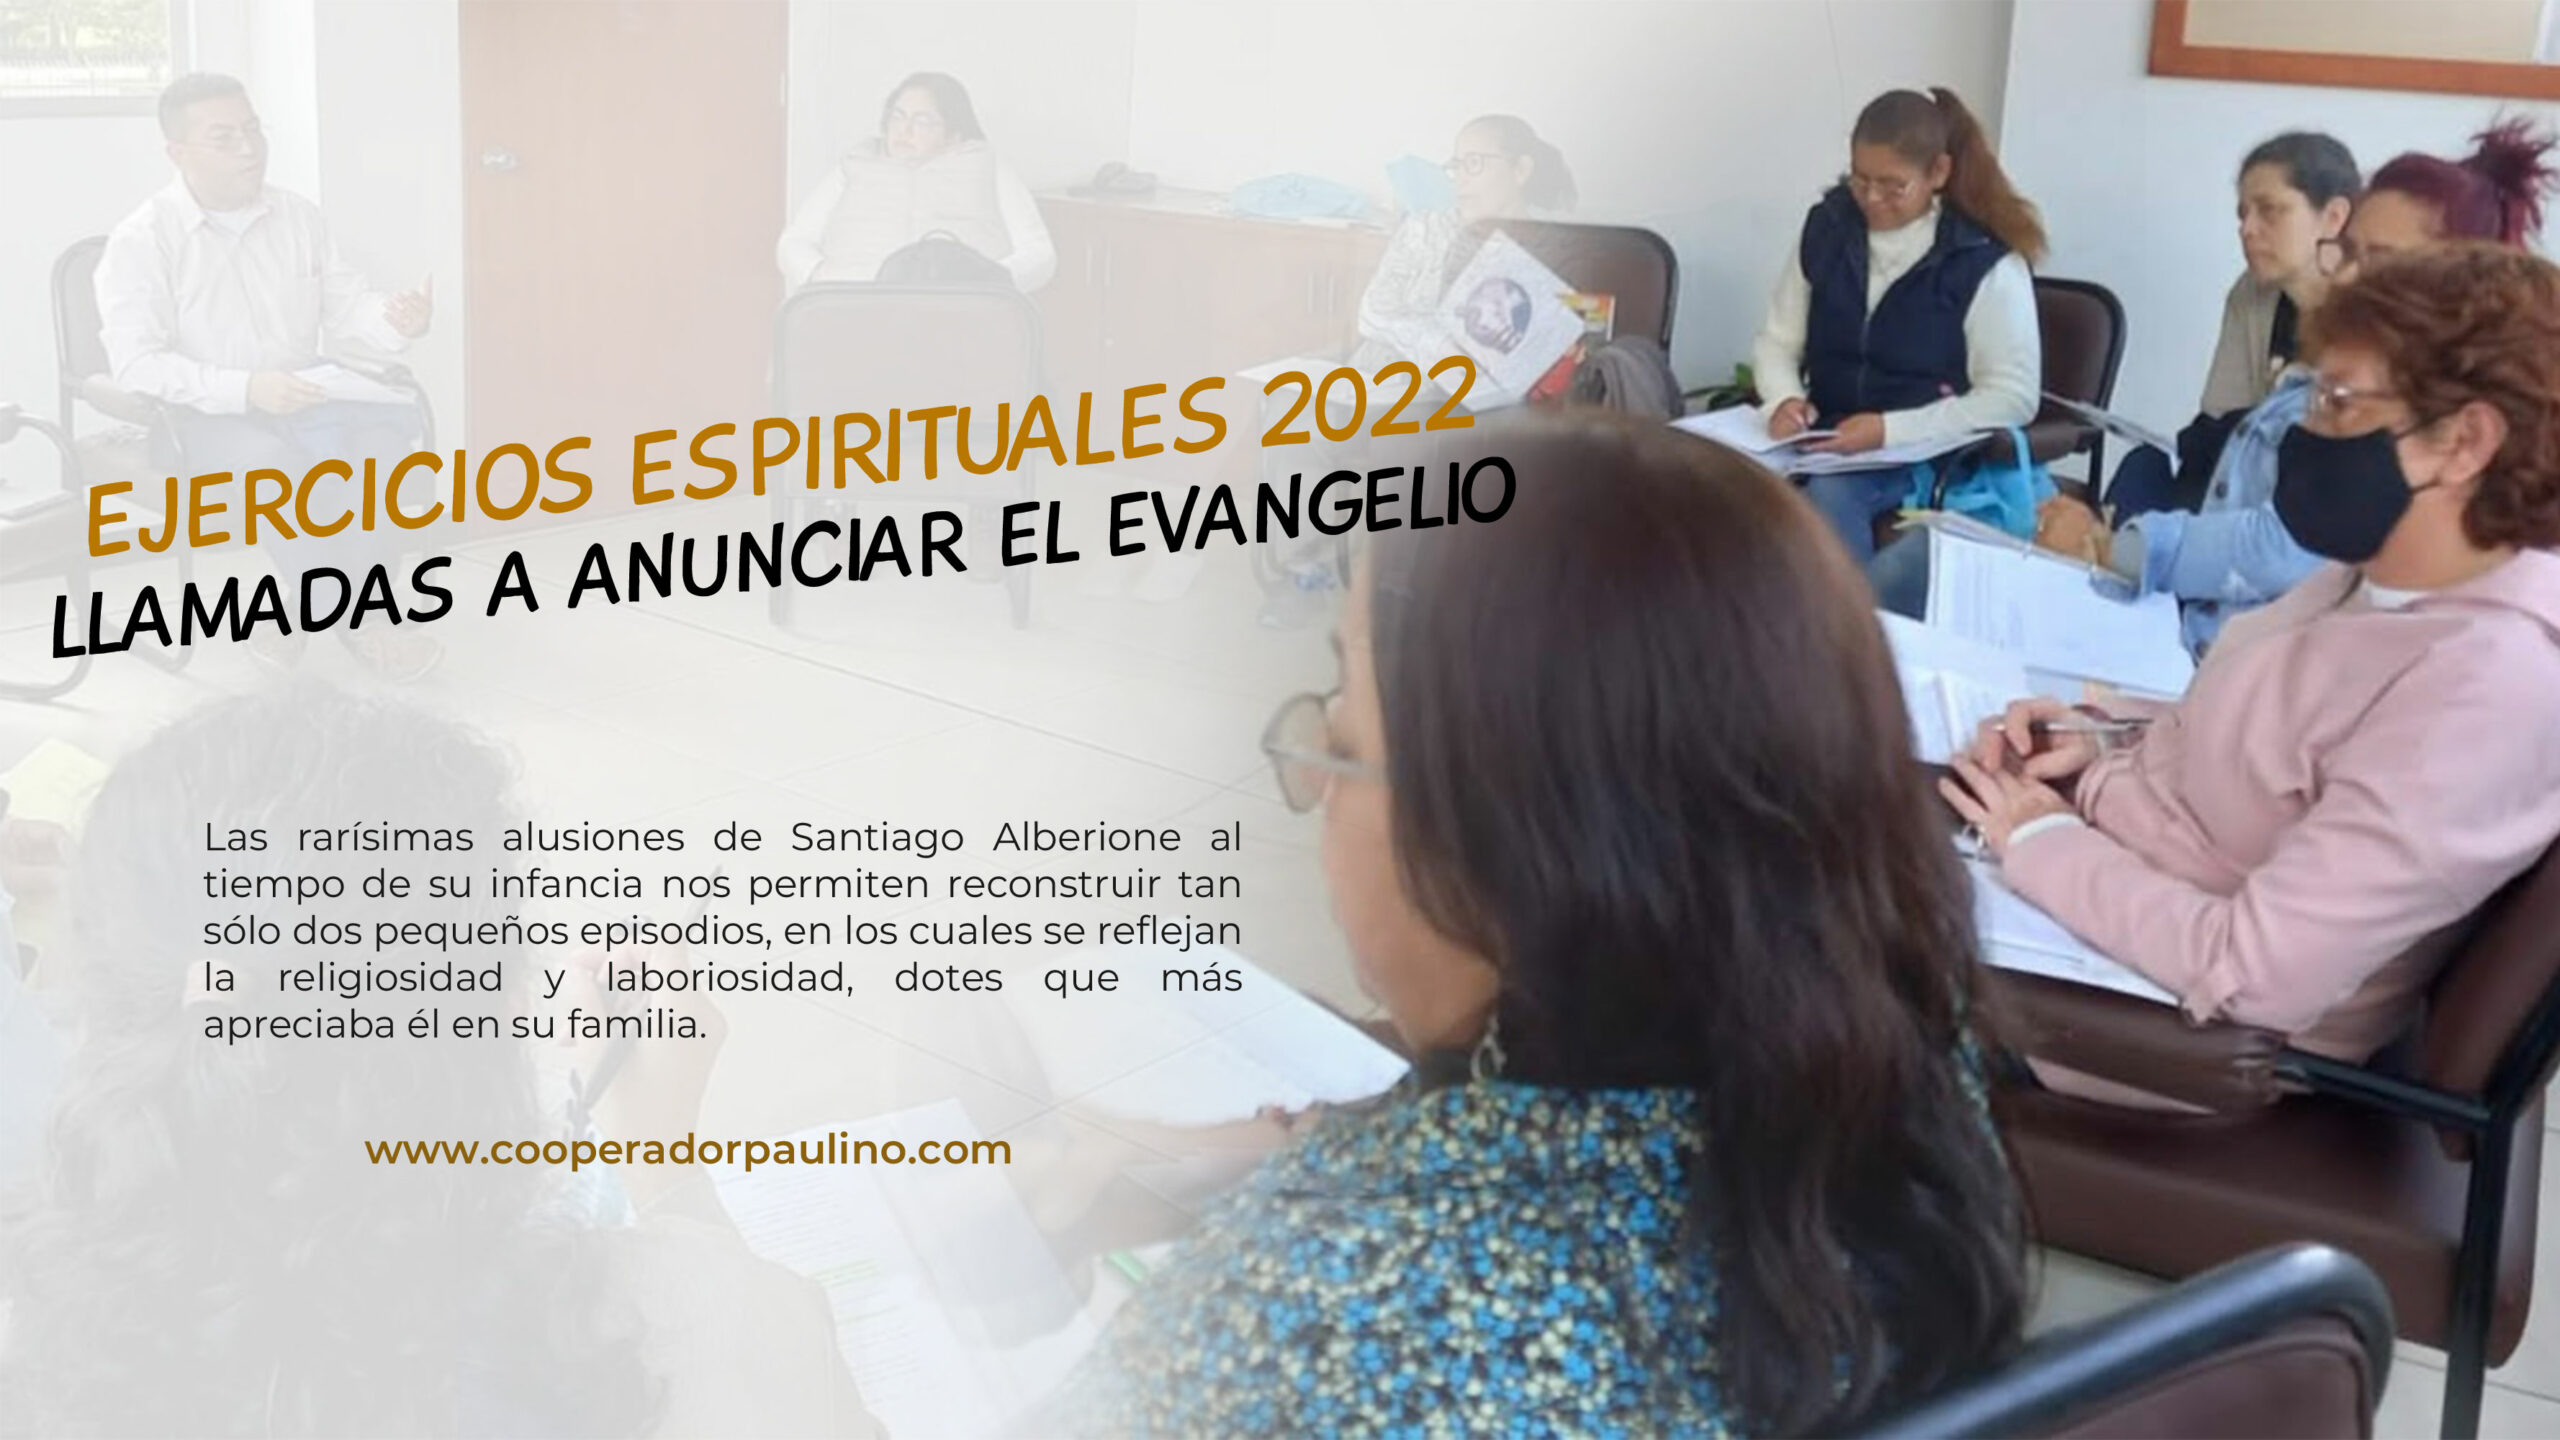 EJERCICIOS ESPIRITUALES 2022 -LLAMADAS A ANUNCIAR EL EVANGELIO